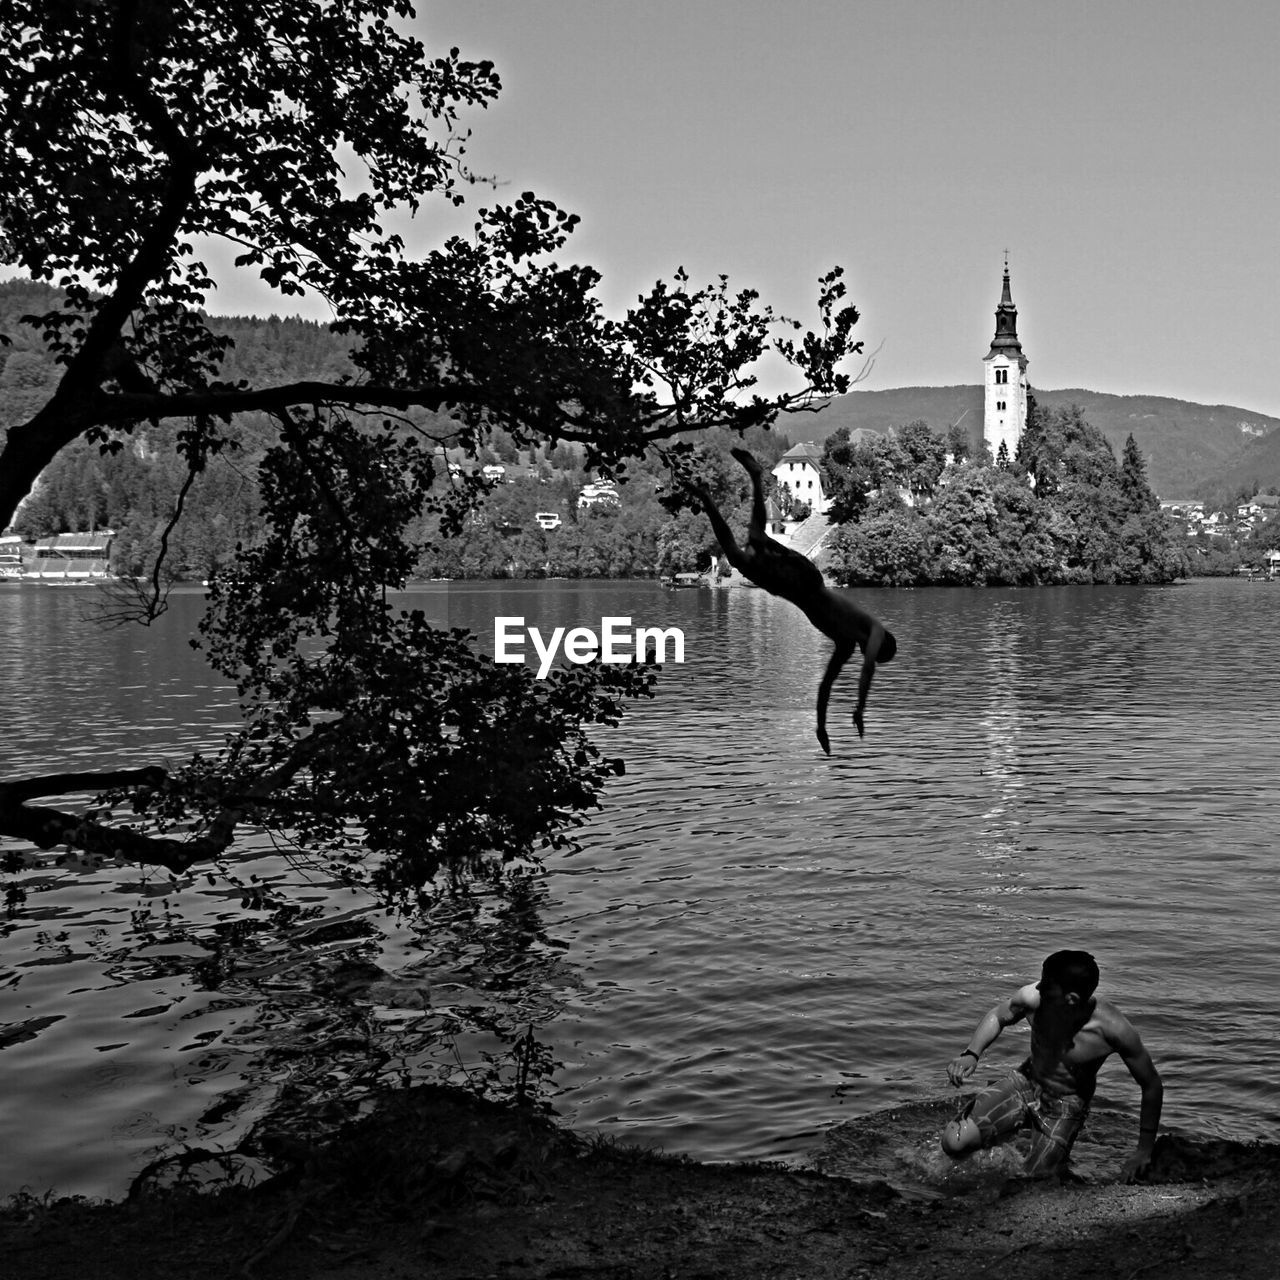 Man jumping in lake